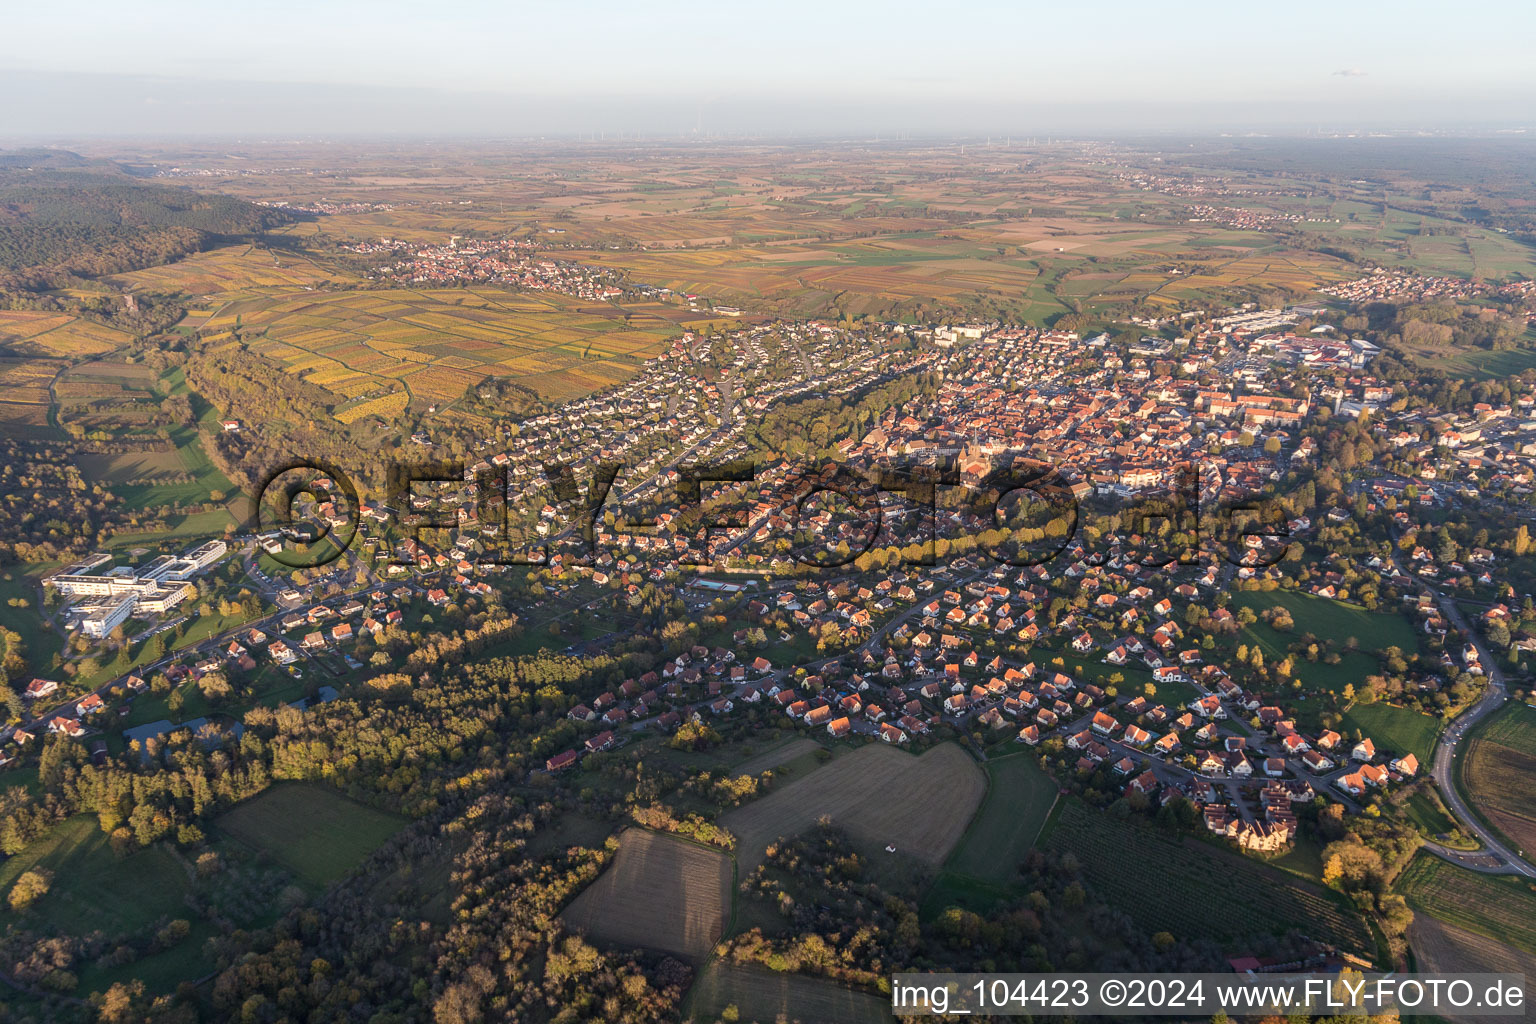 Vue aérienne de Vue de la ville face aux vignobles du Sonnenberg, des rues et des maisons des quartiers résidentiels à Wissembourg dans le département Bas Rhin, France